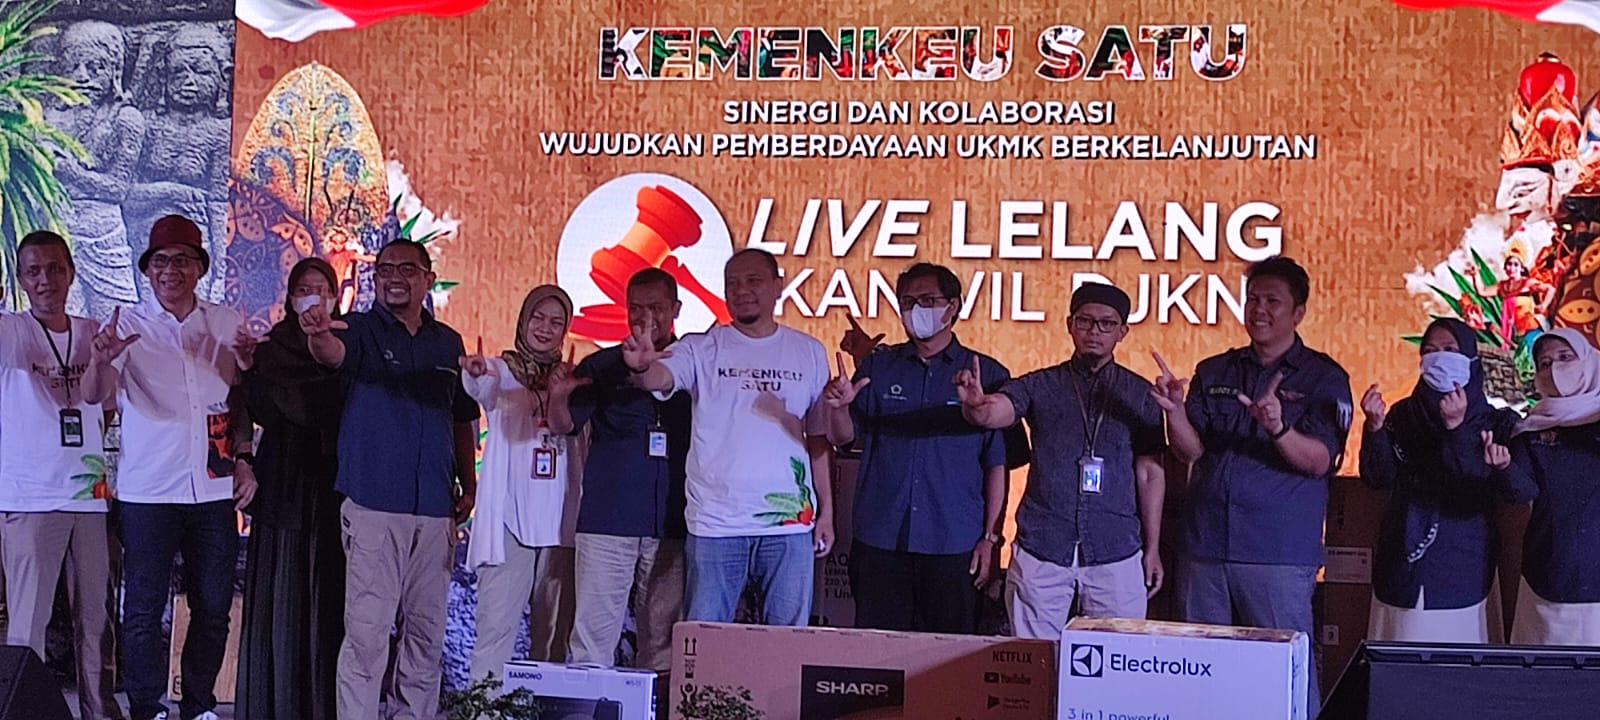 Sinergi dan Kolaborasi Kemenkeu Satu Lampung dengan BPDPKS Dalam Pemberdayaan UKMK Berkelanjutan